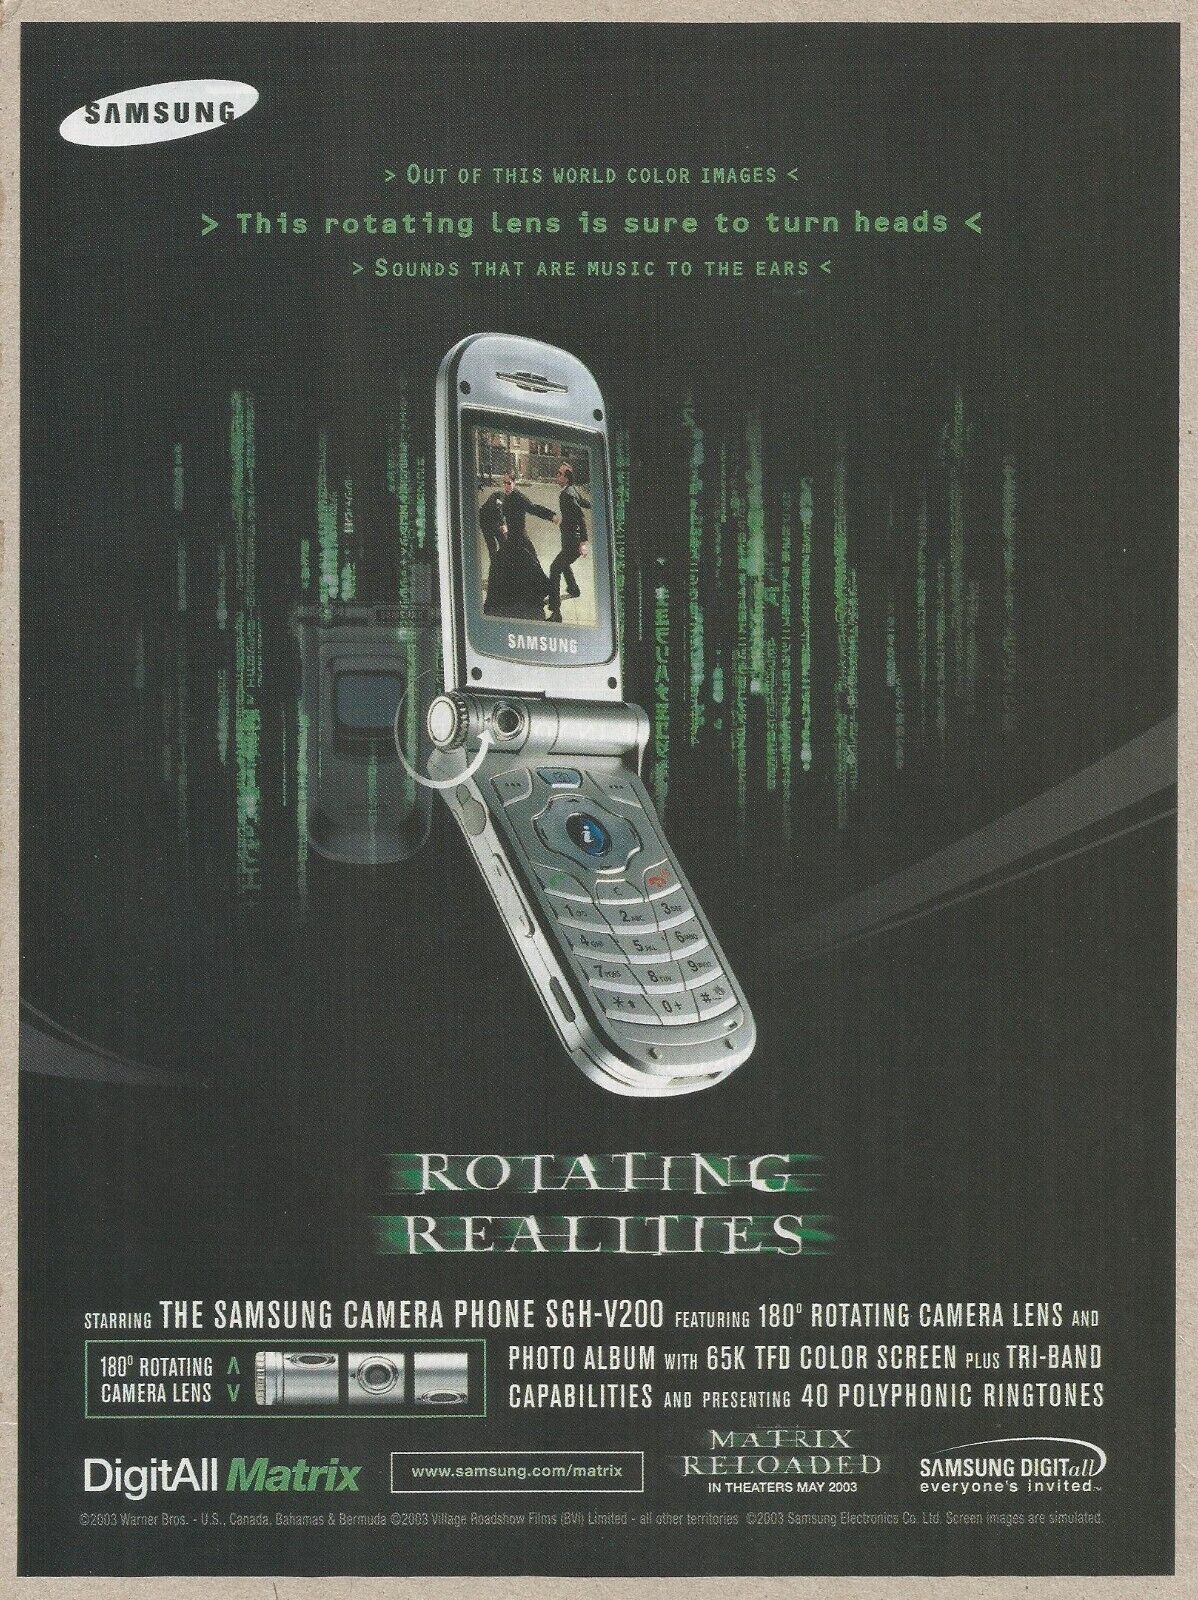 SAMSUNG CAMERA PHONE SGH-V200  - Rotating Realities  - 2003 Print Ad